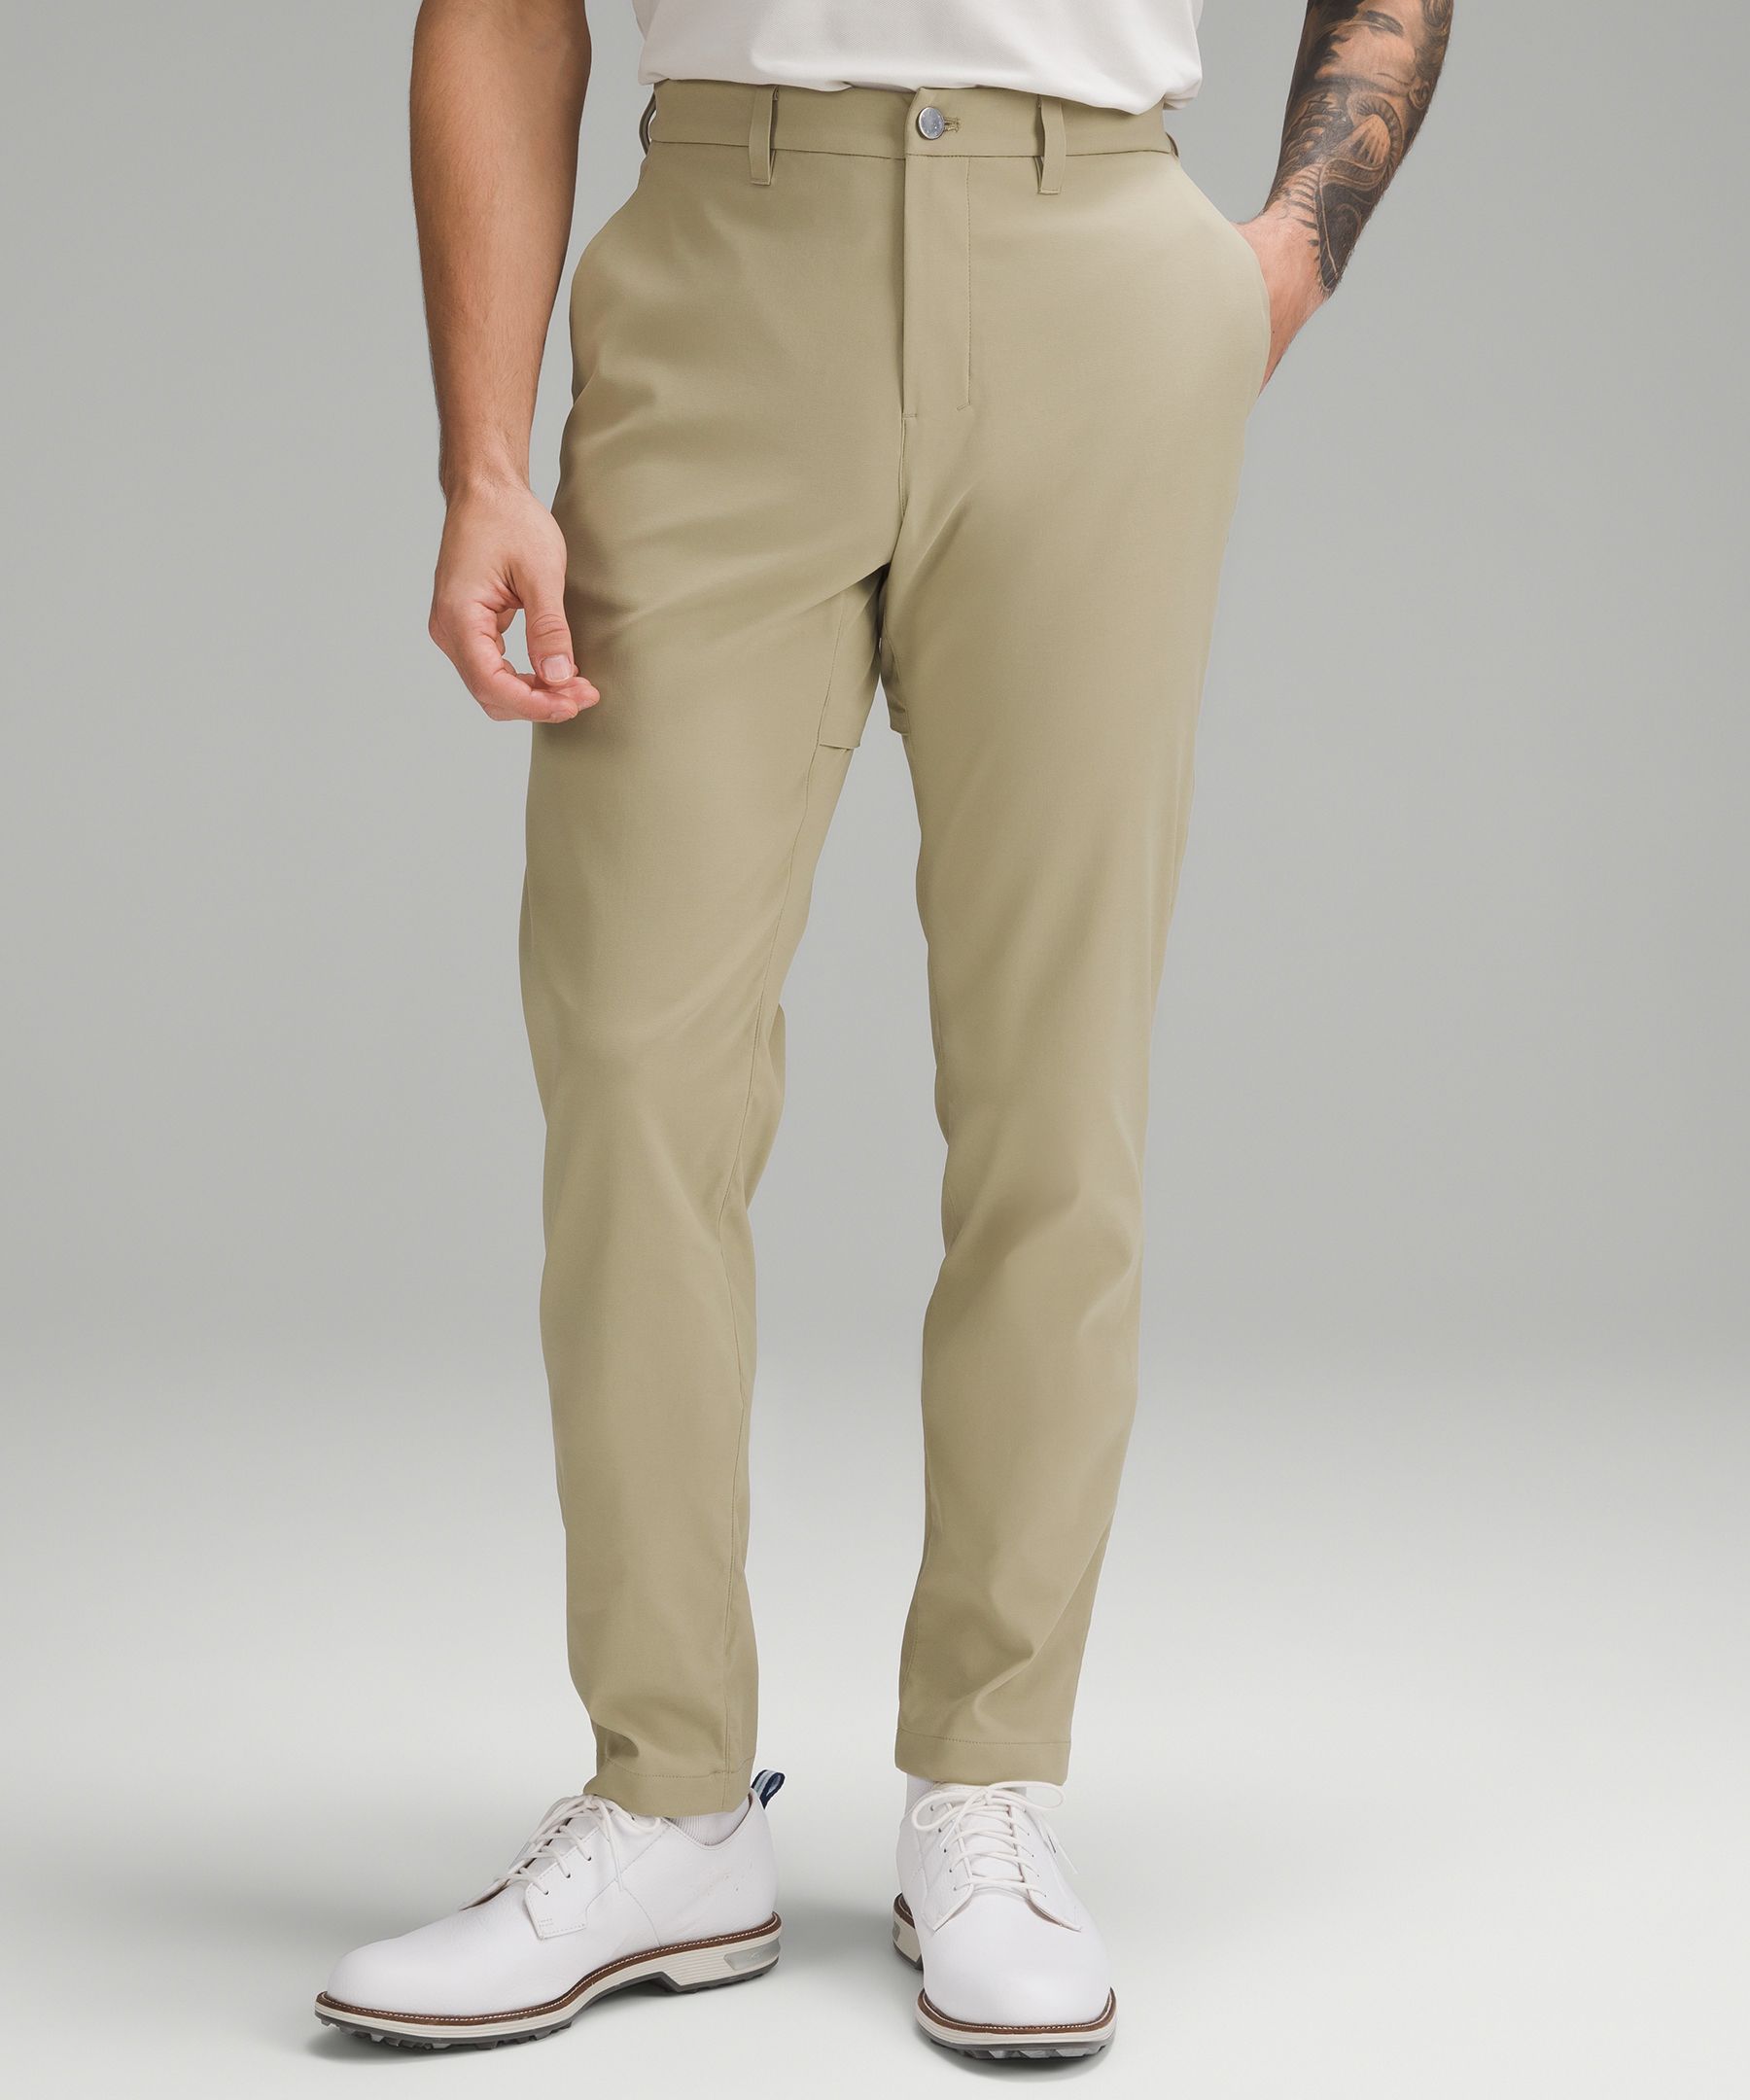 Lululemon Abc Slim-fit Golf Trousers 30"l